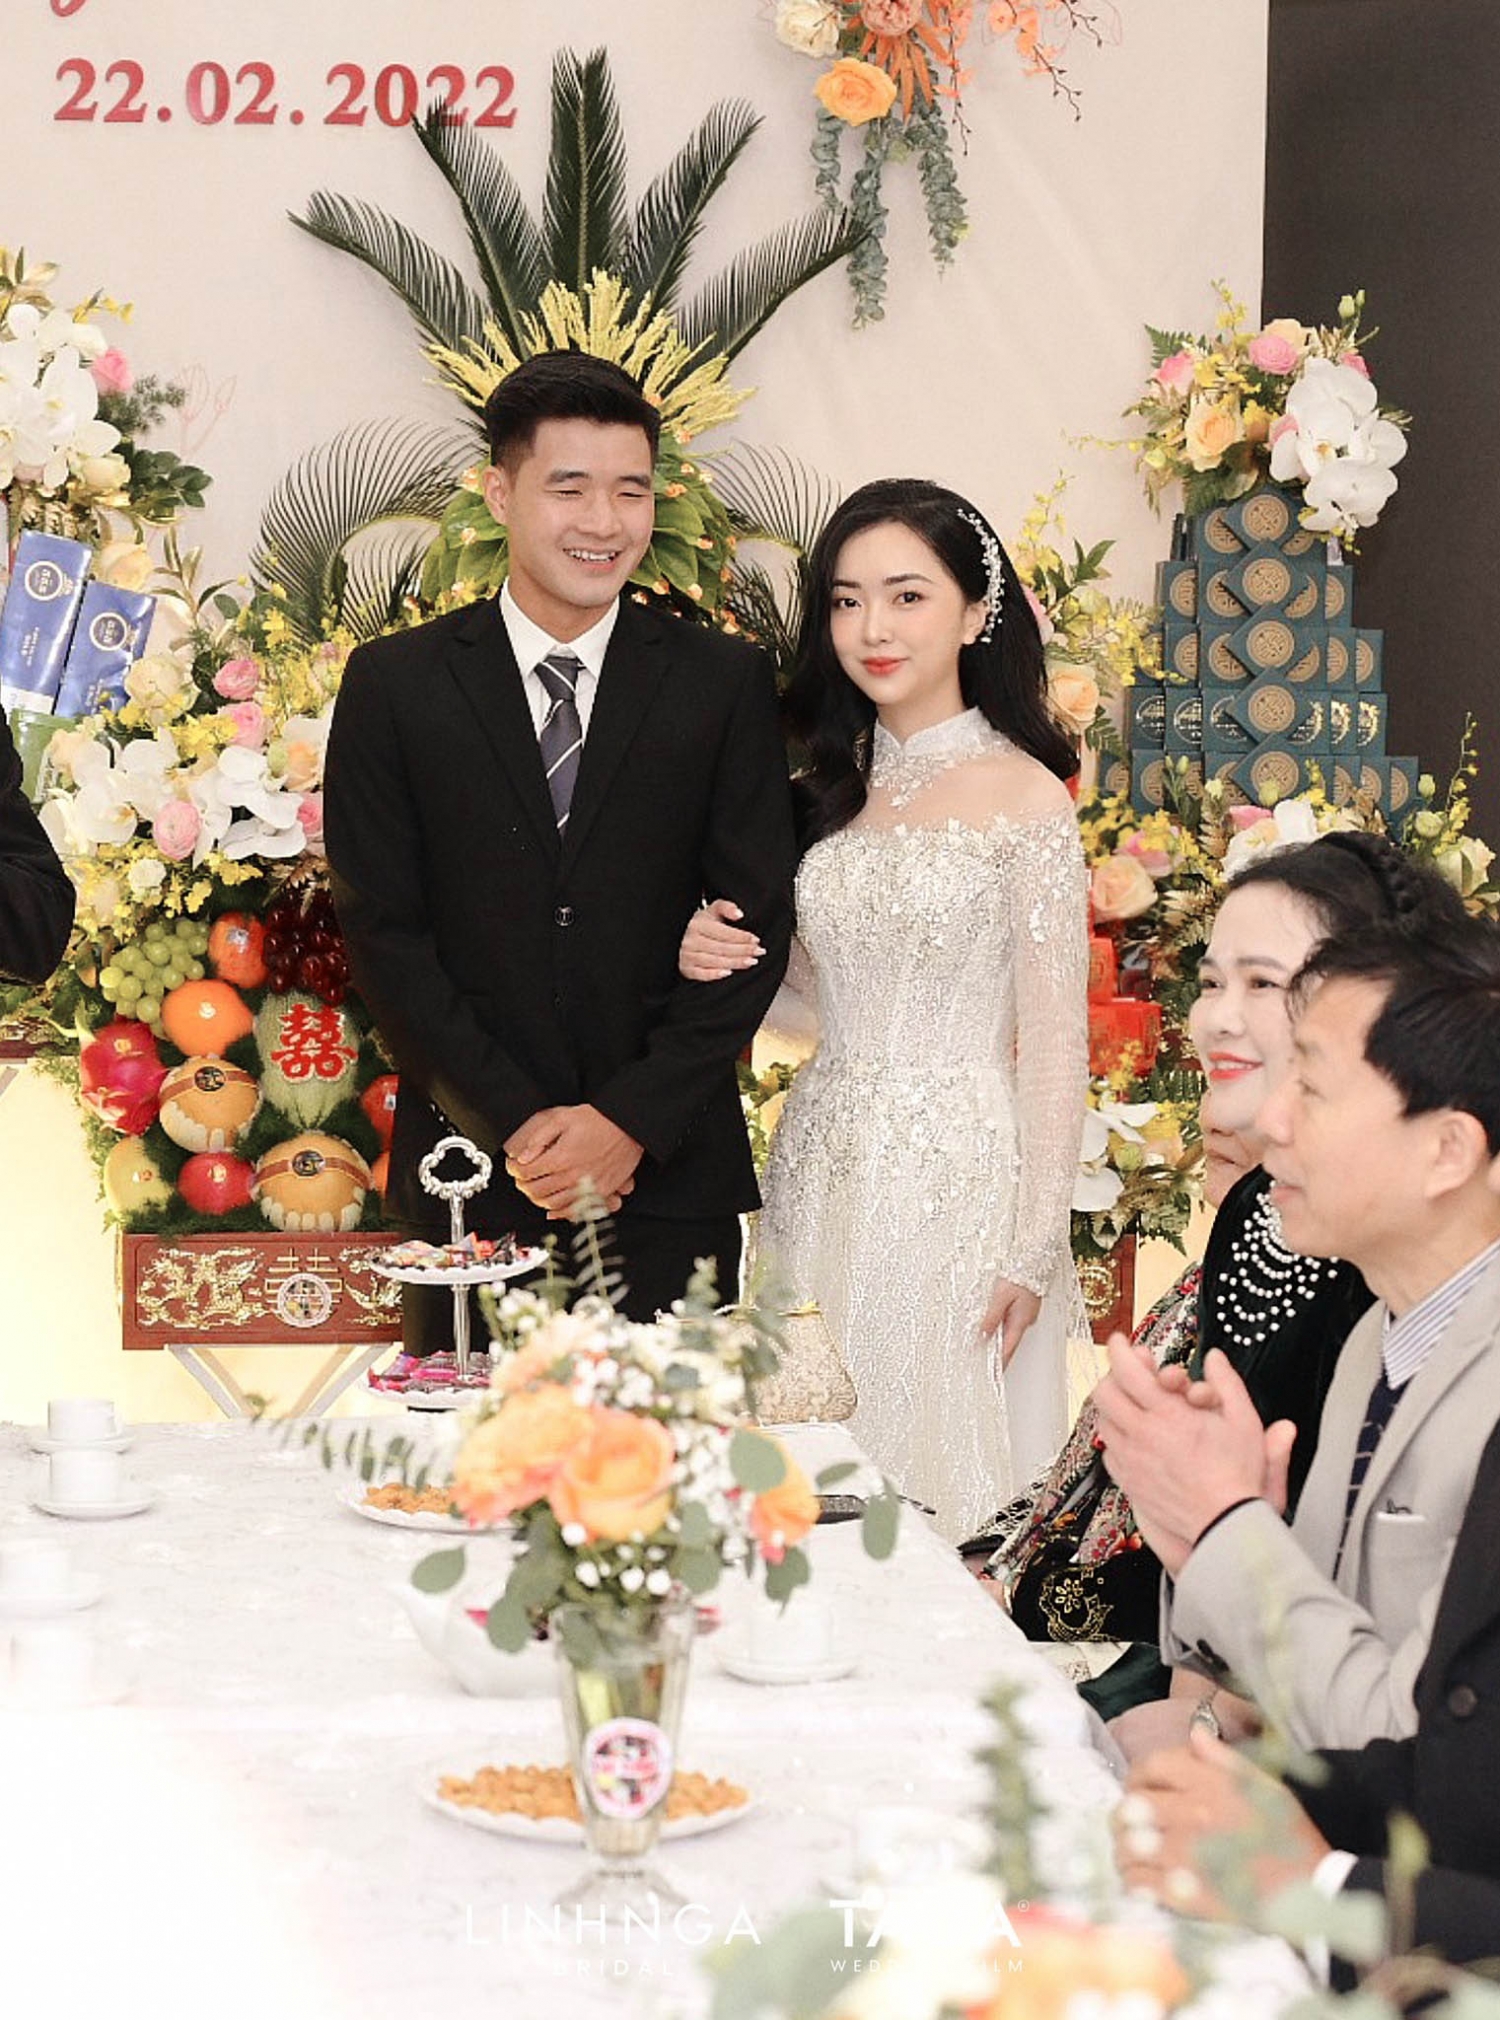 Đám cưới ngọt ngào của Hà Đức Chinh